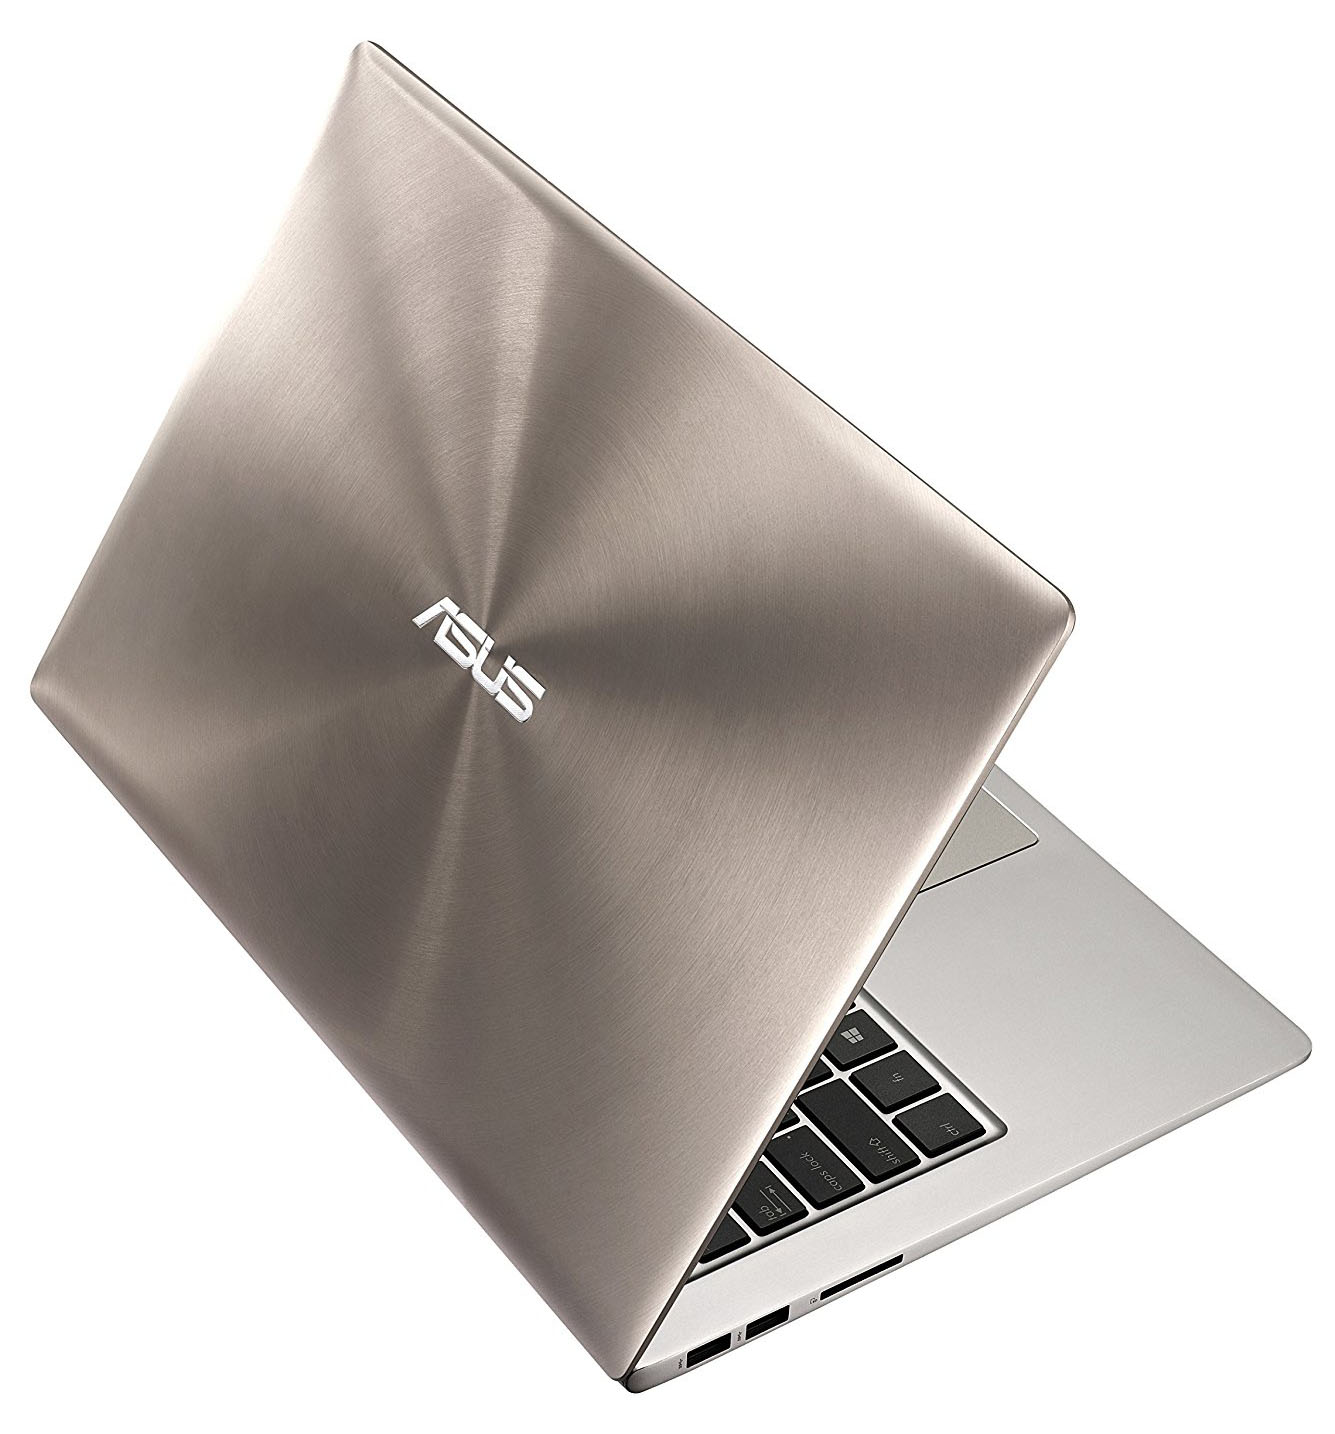 ASUS ZenBook UX303 - i5-6200U · Intel HD Graphics 520 · 13.3 